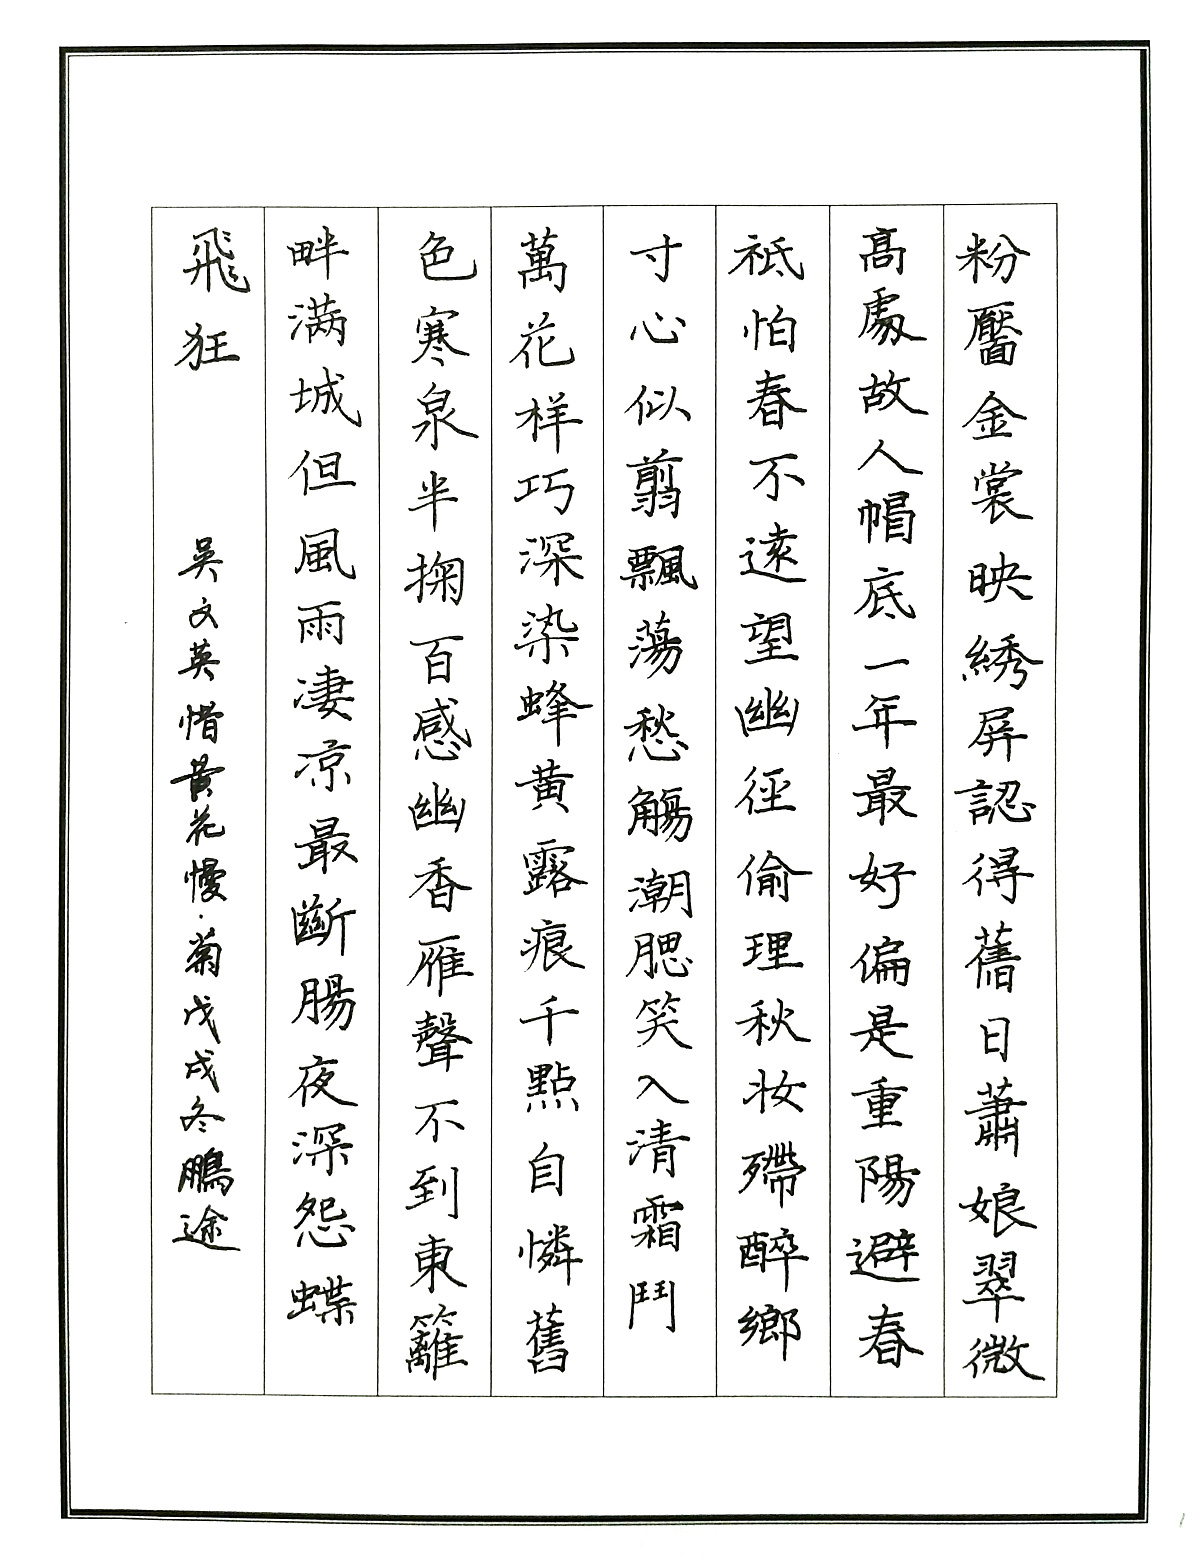 鲁迅《上海的孩子》手写钢笔字练习笔友钢笔书法习作欣赏 | 钢笔爱好者